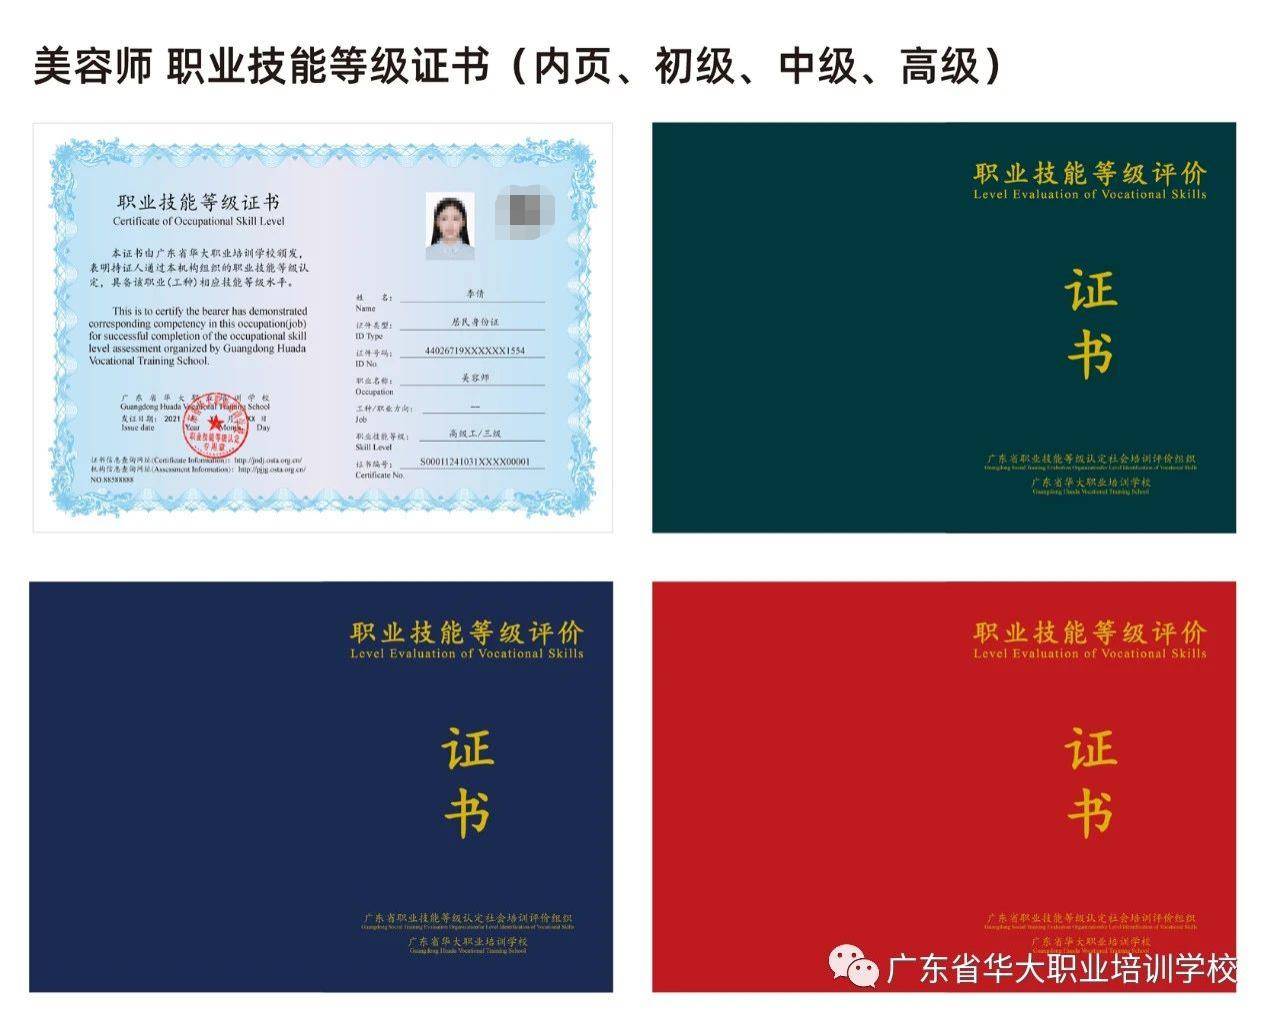 2023年11月1日起广东省美容师等级证书报考条件有调整,请查收